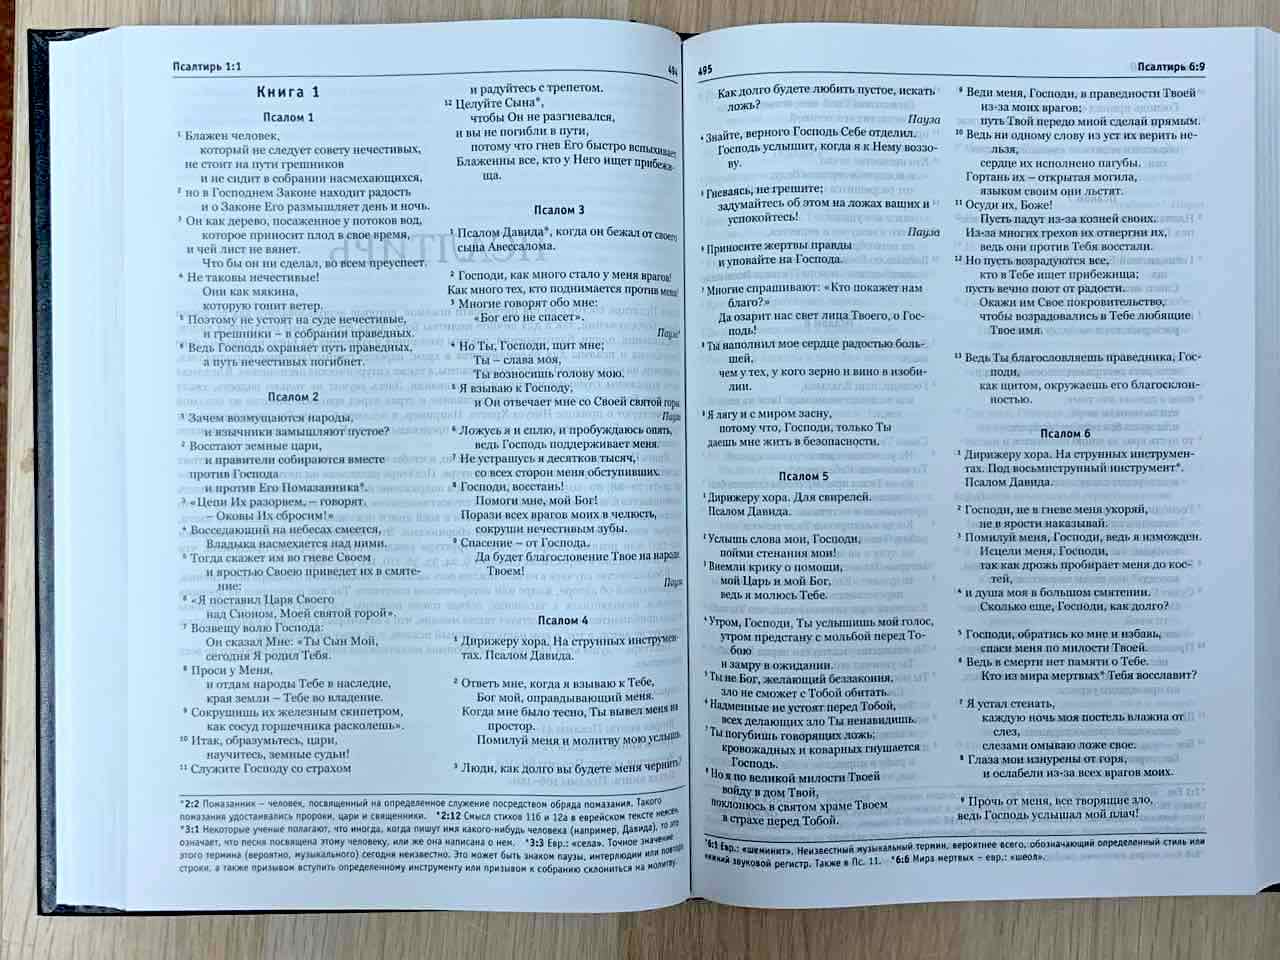 Библия в современном переводе (новый русский перевод) 073 цвет темно-зеленый, с небольшими дефектами на внешней обложке